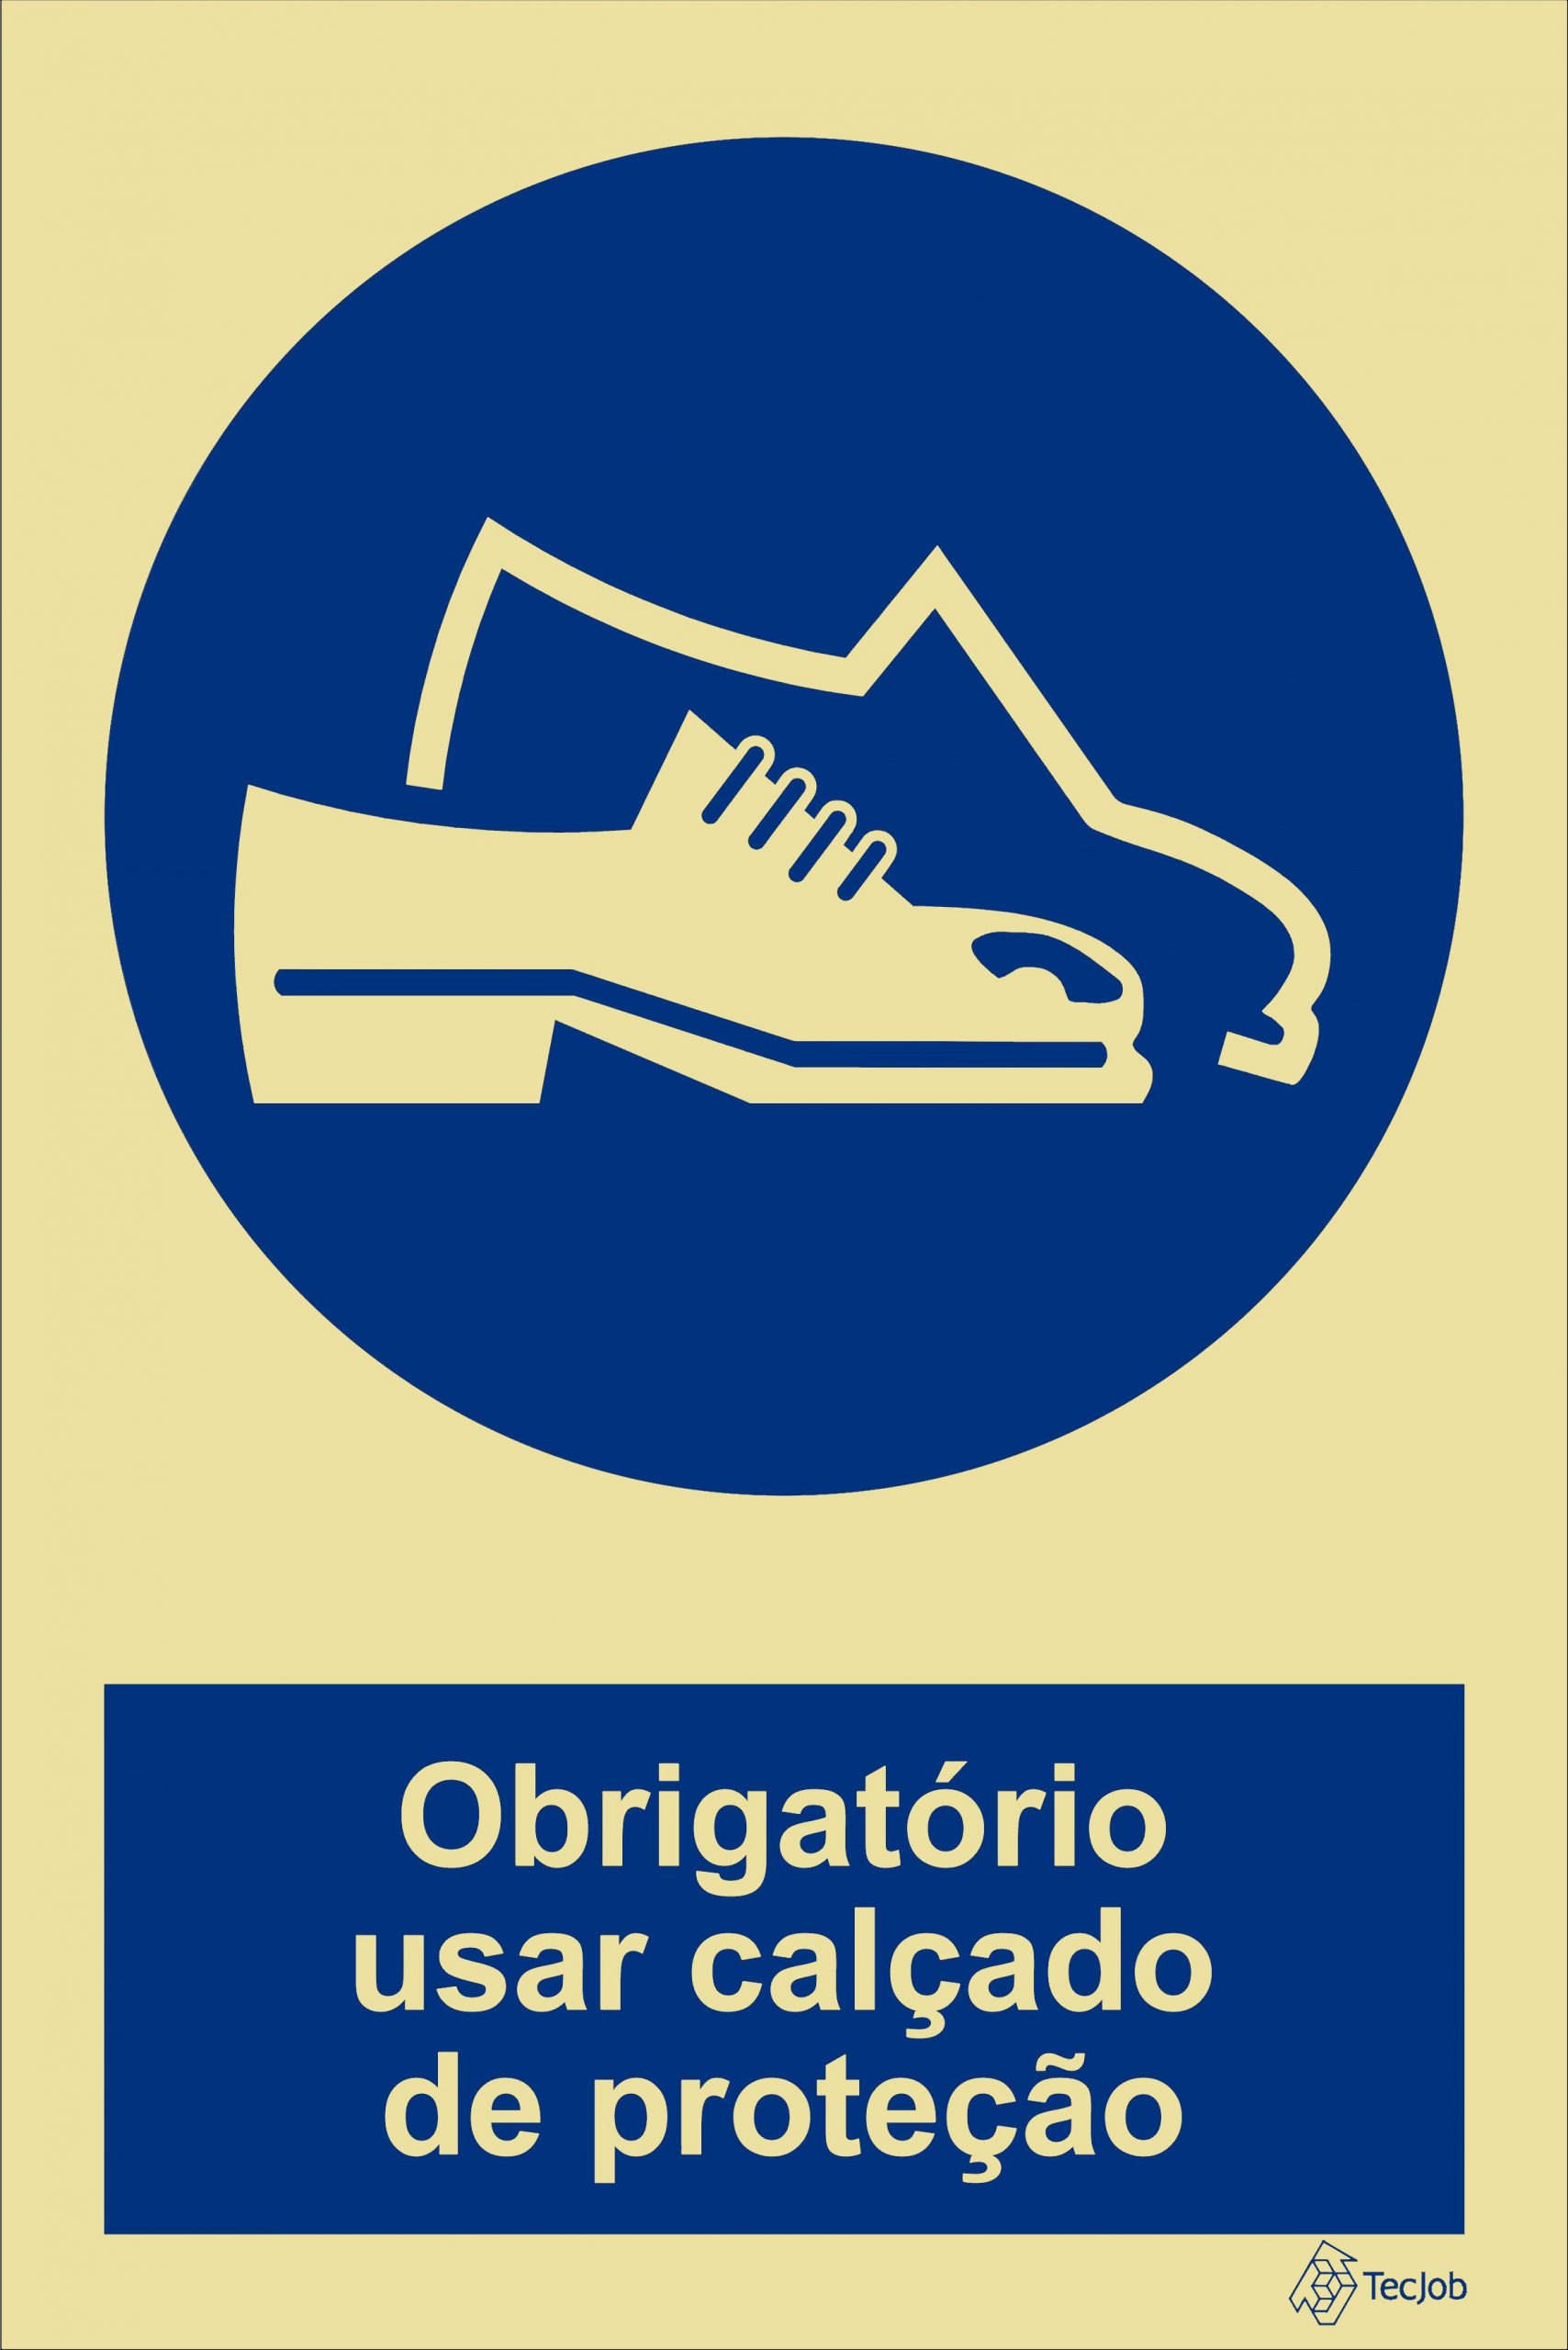 sinaletica obrigatório usar calcado de protecao - OB0054